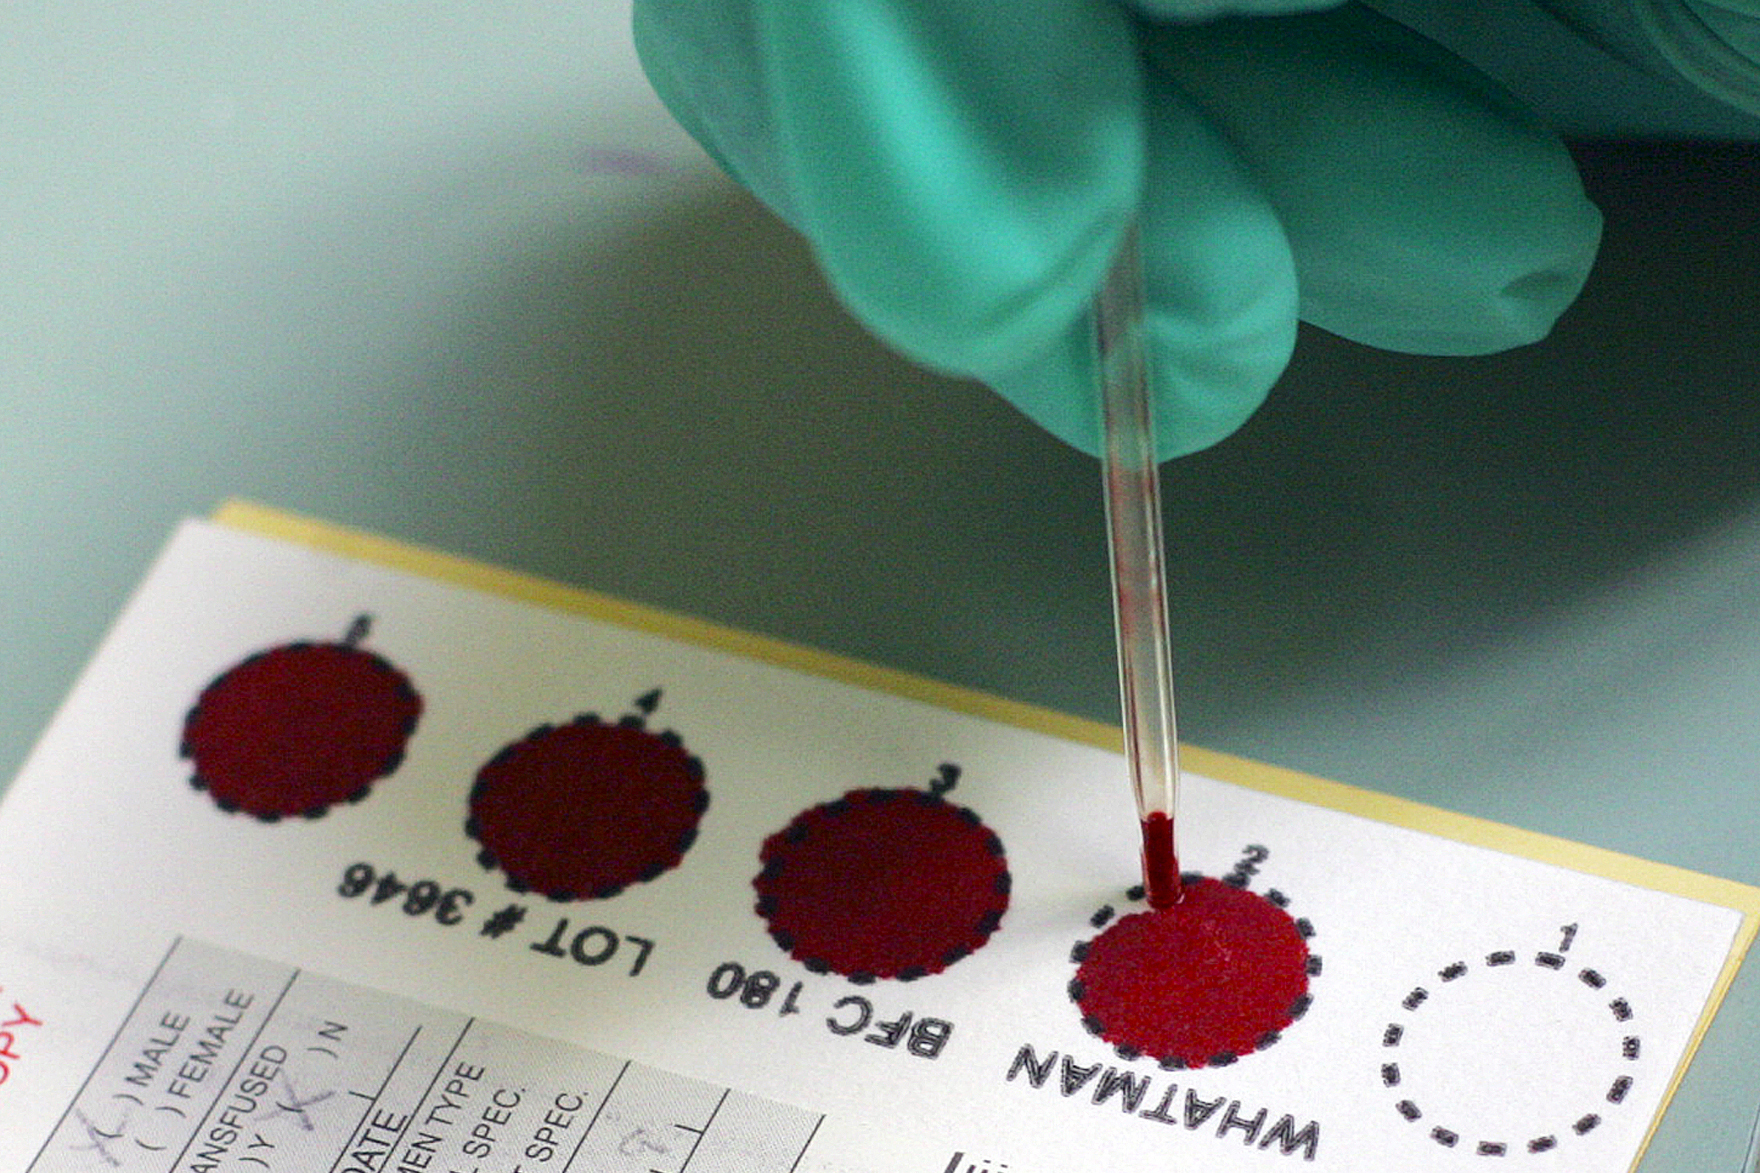 A los recién nacidos se les extrae sangre para analizarla, ¿deben los estados conservar esas muestras?